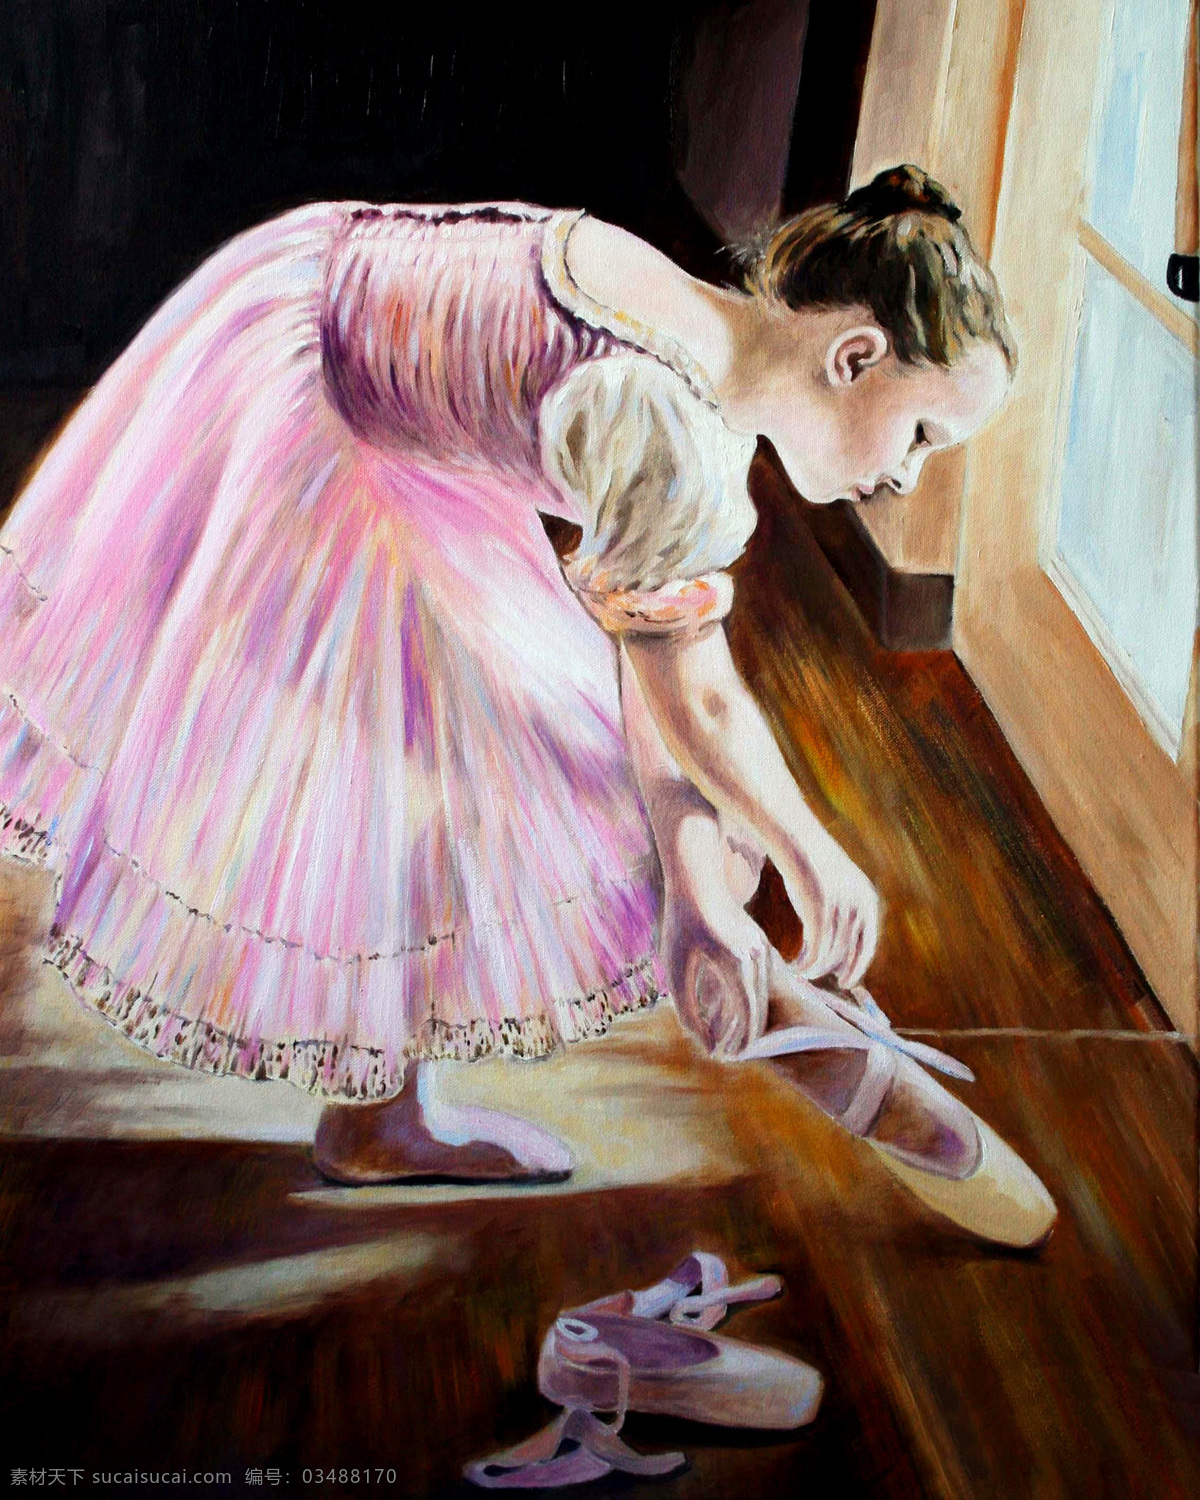 芭蕾舞 女孩 油画 芭蕾舞女孩 人物油画 油画人物 西方 人物 写生 油画艺术 绘画艺术 装饰画 书画文字 文化艺术